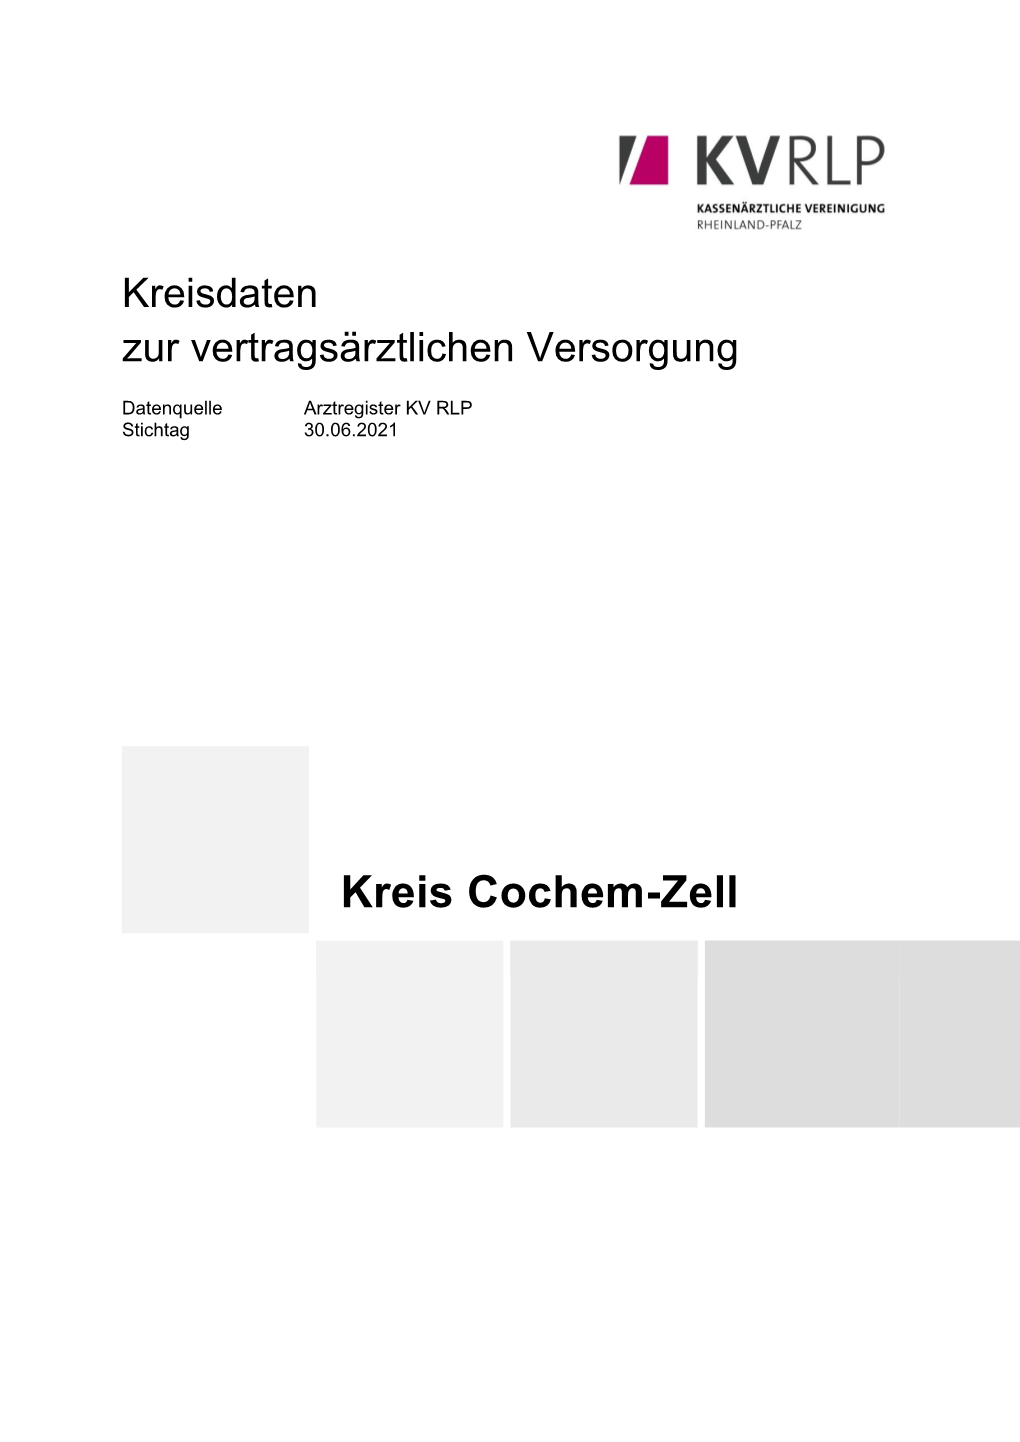 Kreis Cochem-Zell